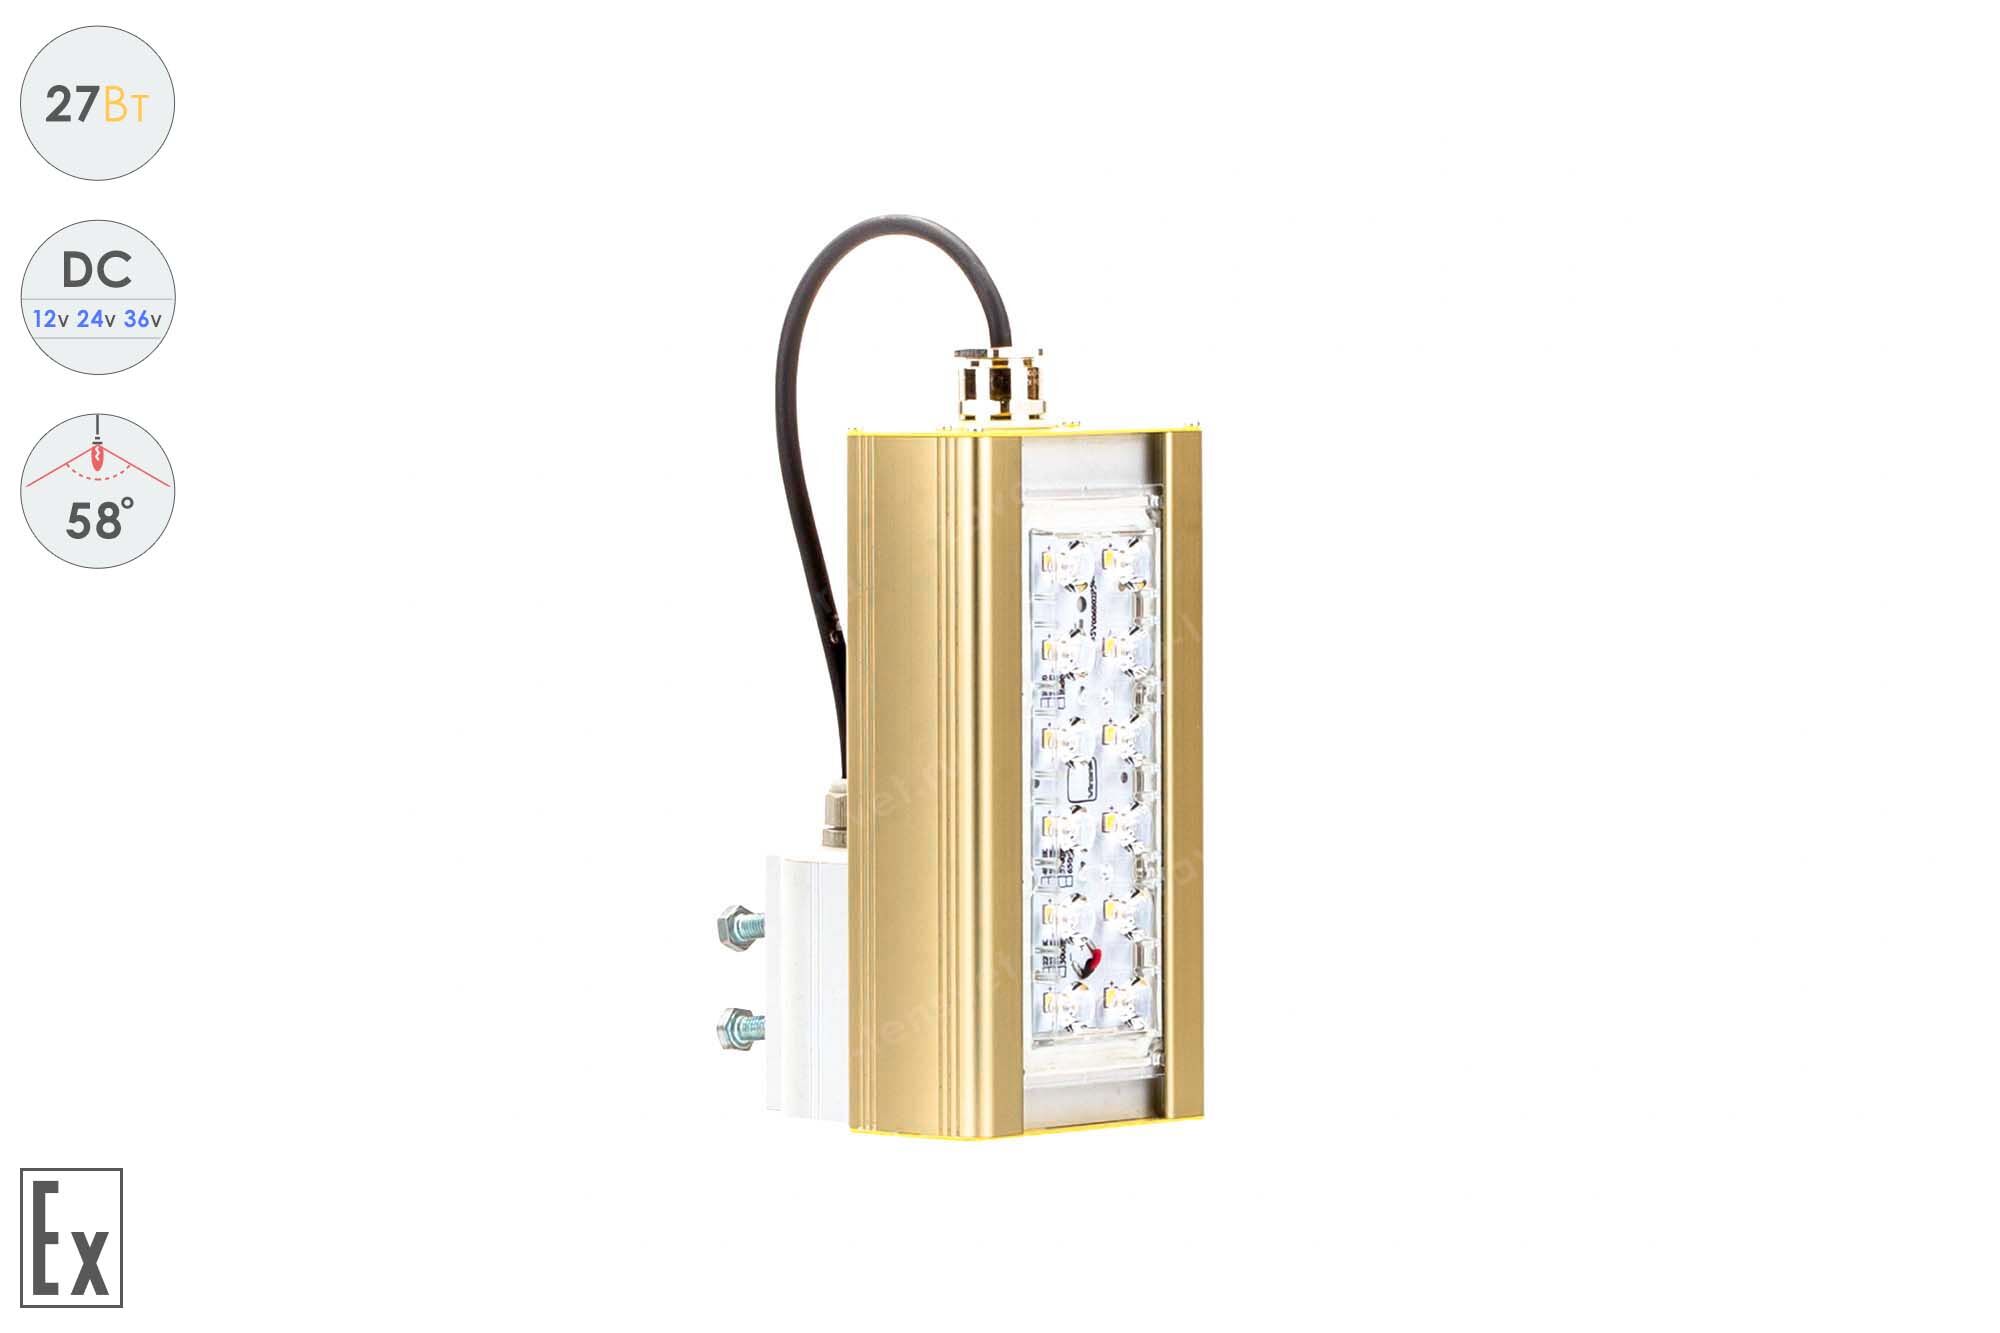 Светодиодный светильник Низковольтный Прожектор Взрывозащищенный GOLD, консоль K-1, 27 Вт, 58°